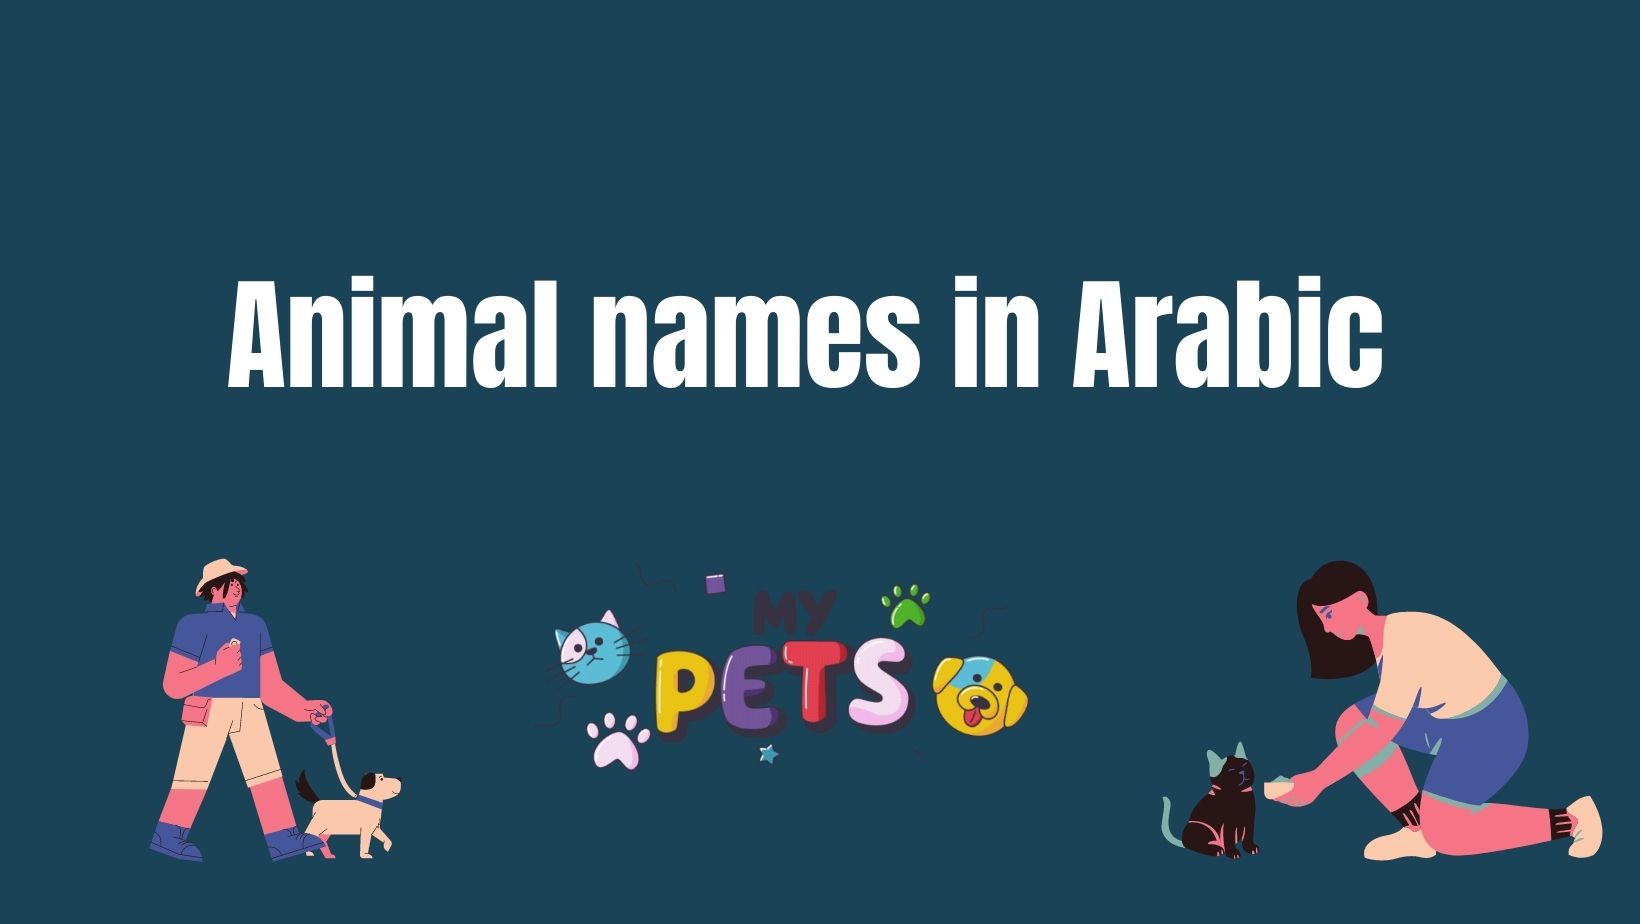 Animal names in Arabic